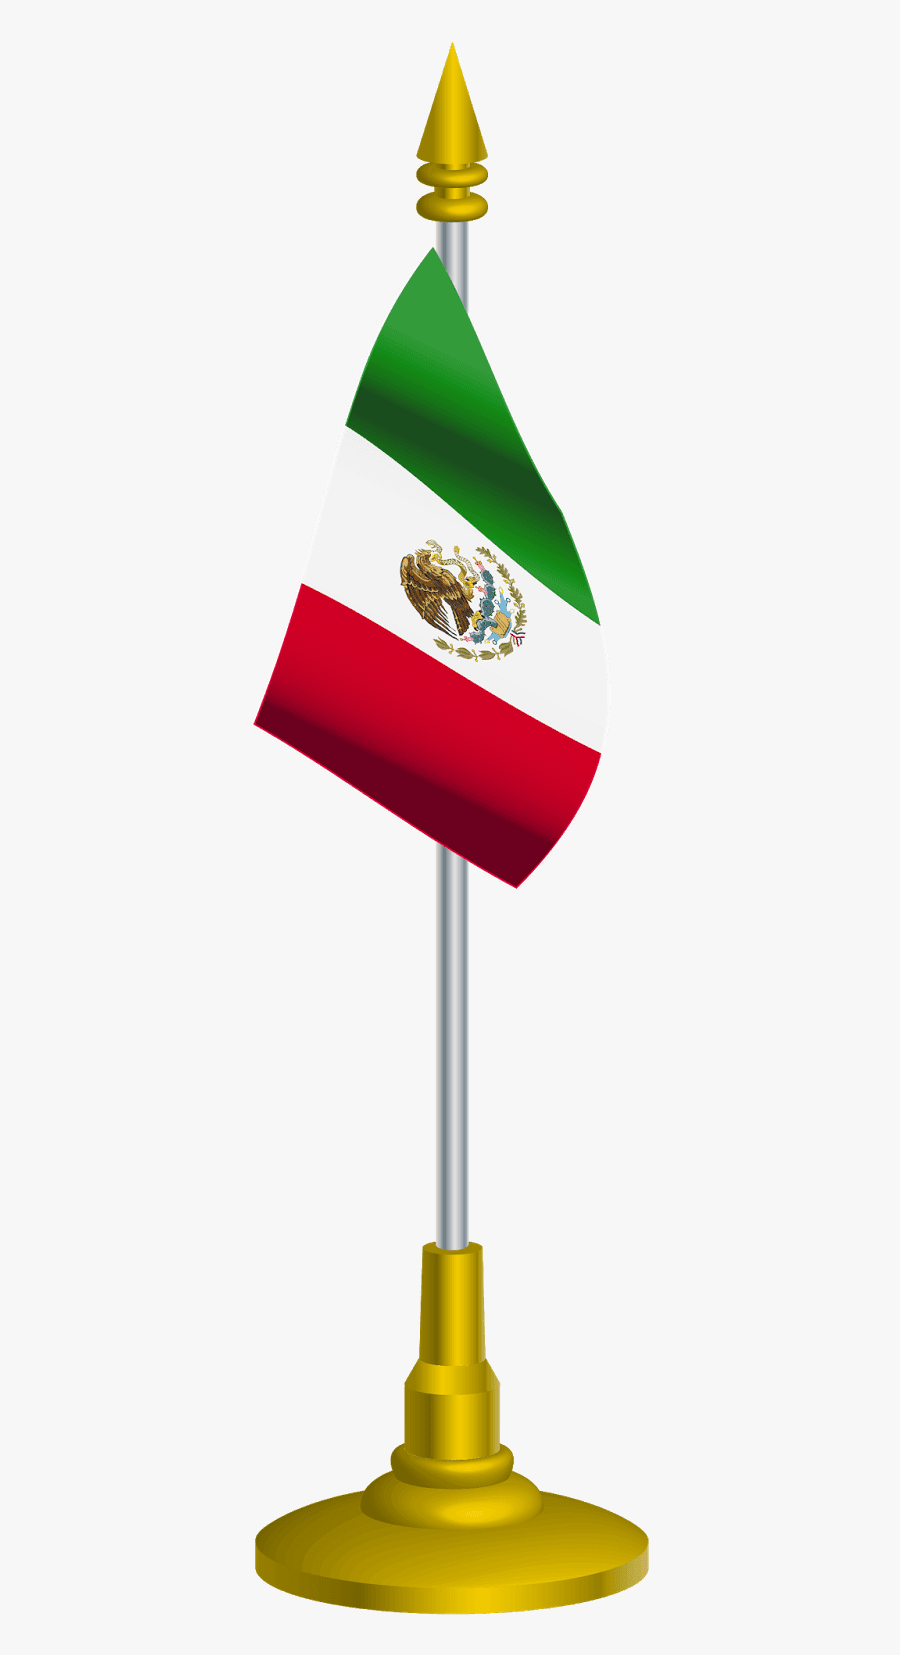 Result Images Of Bandera De Mexico Animada Para Ninos PNG Image Collection